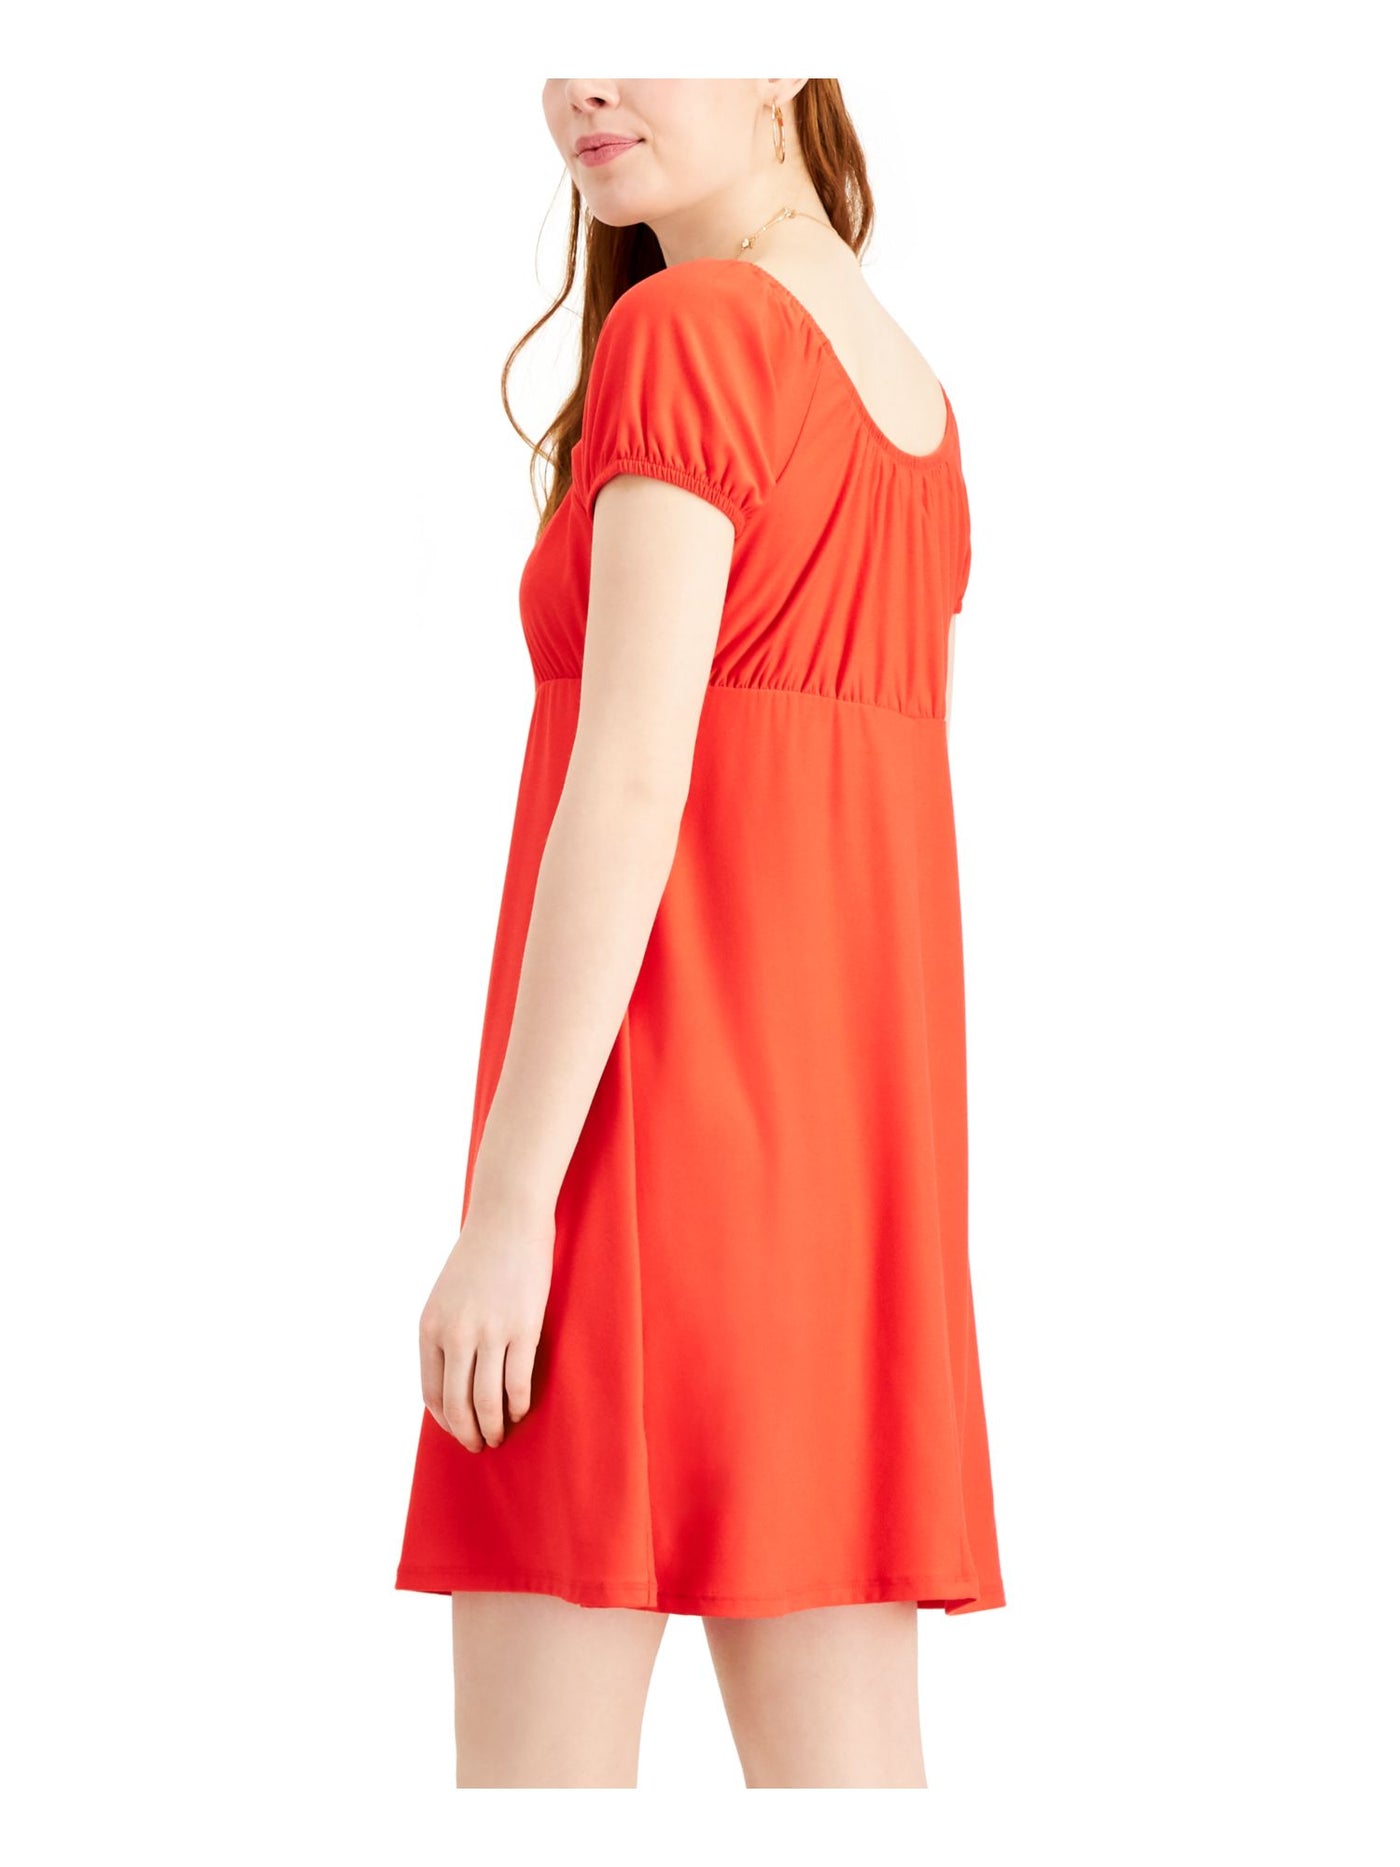 ULTRA FLIRT Womens Red Cap Sleeve Short Empire Waist Dress Juniors Size: XXS